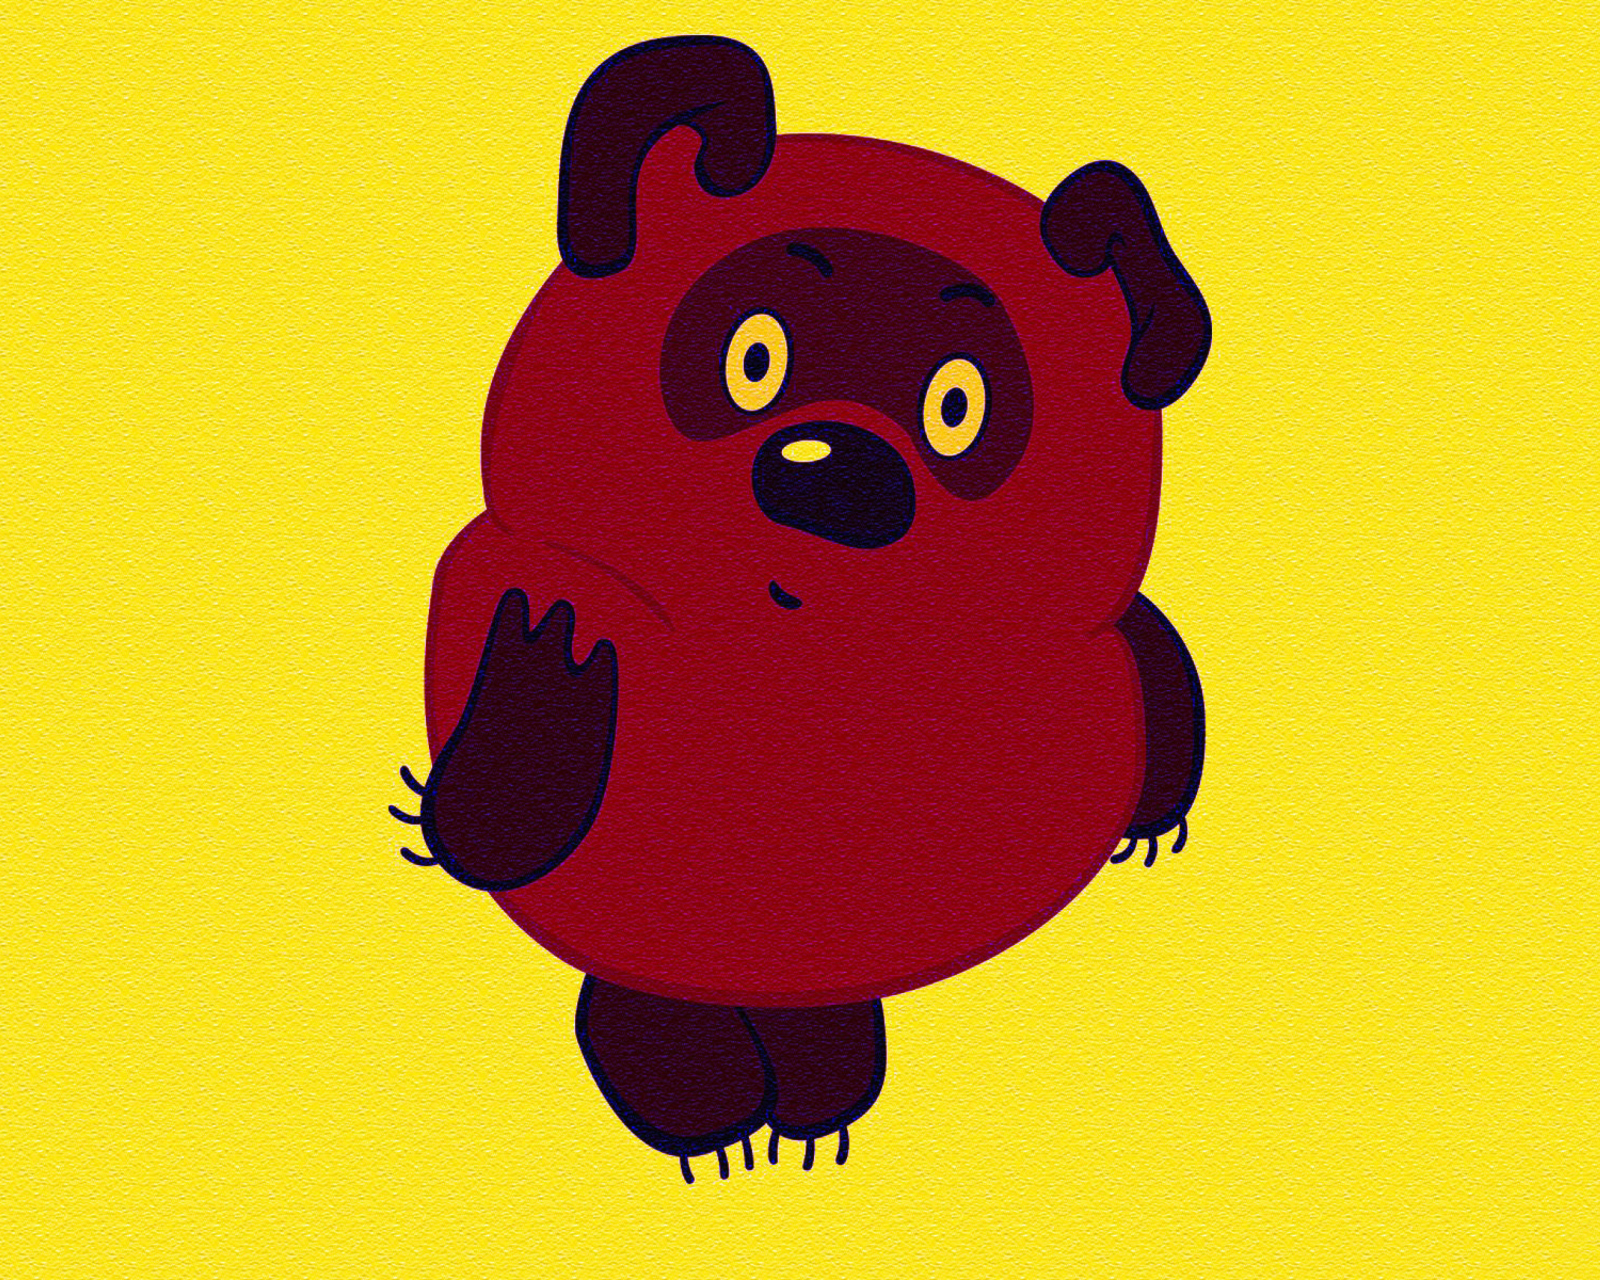 Russian Cartoon Character Winnie Pooh wallpaper 1600x1280